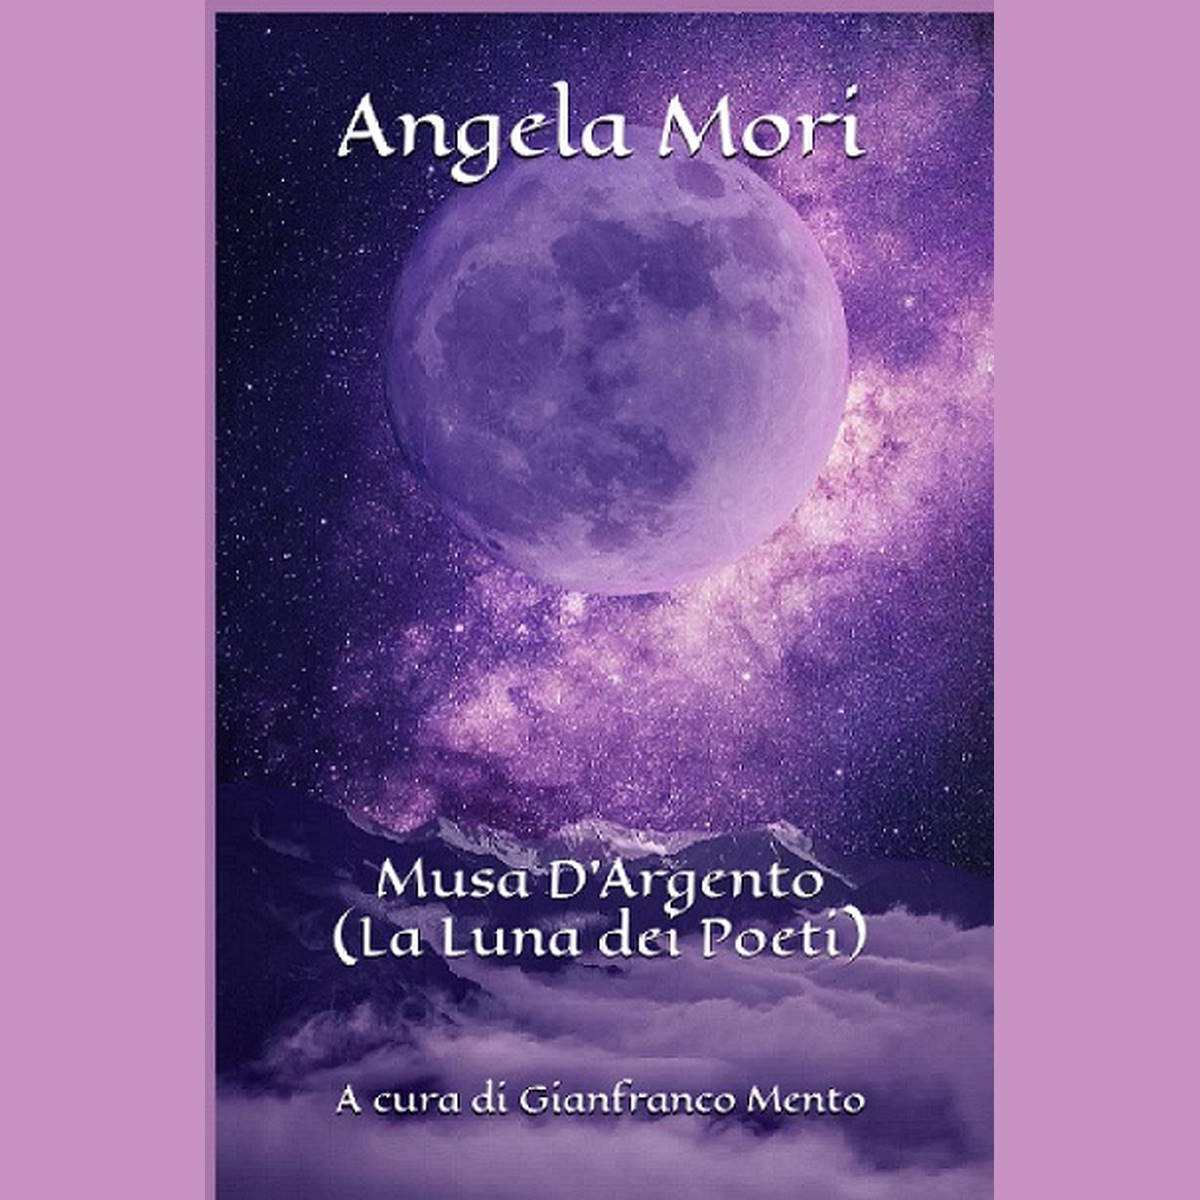 Catania – Presentato “Musa d’Argento” (La Luna dei Poeti), libro di Angela Mori